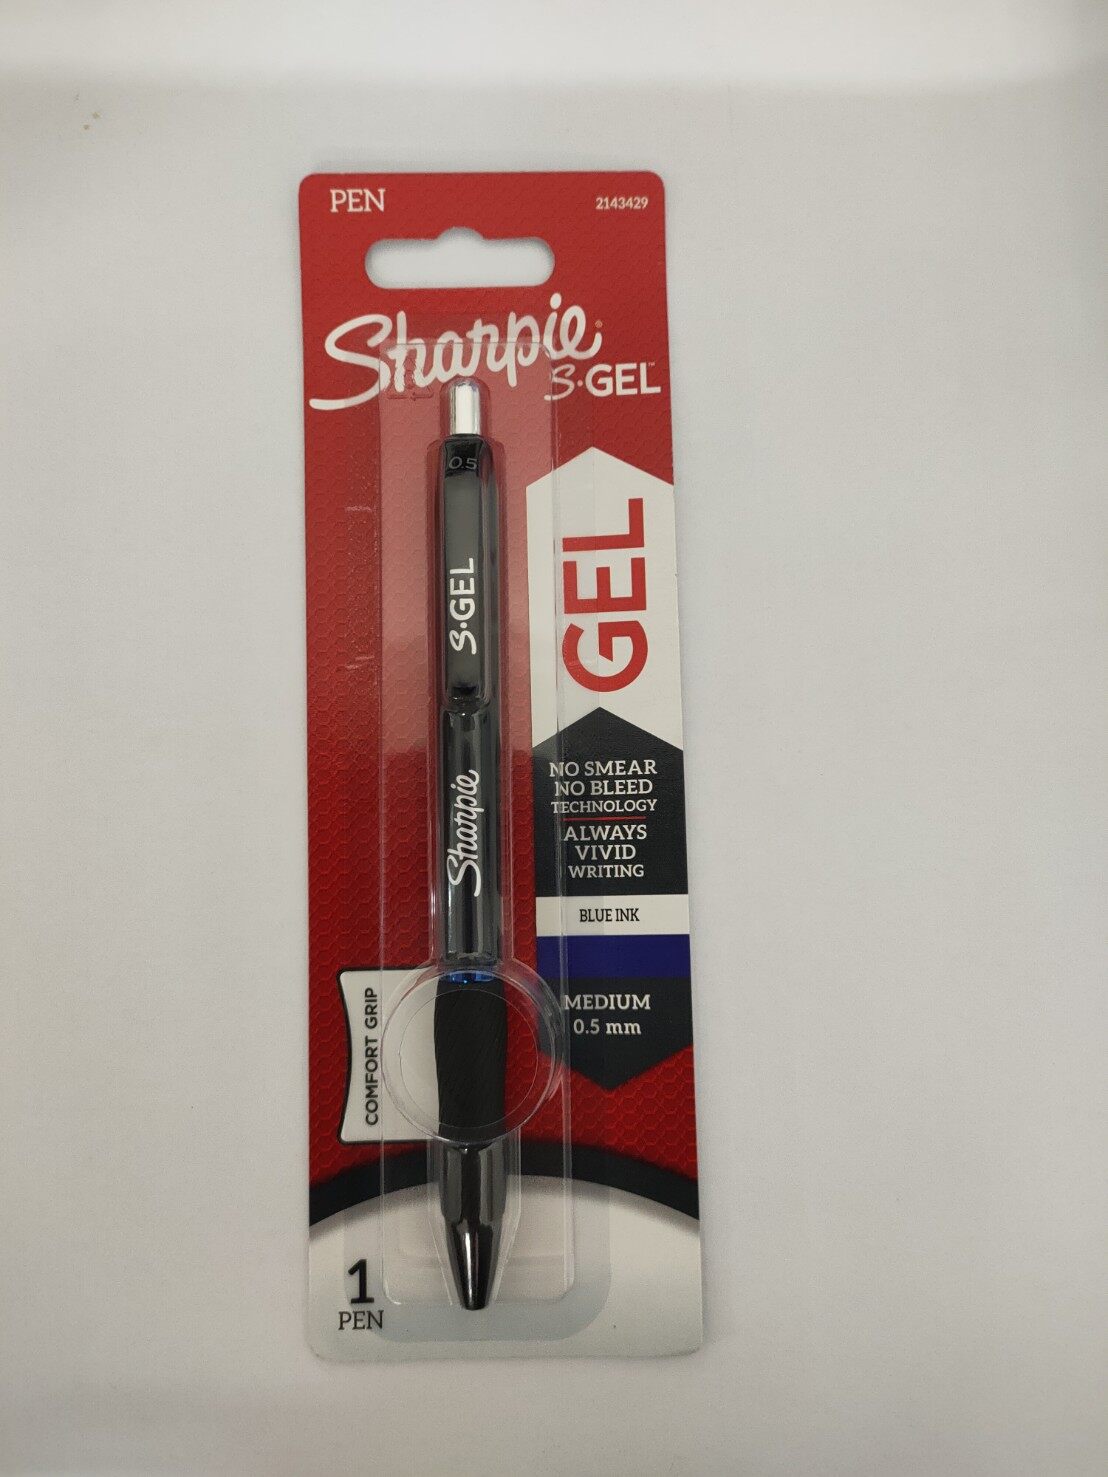 Sharpie S-Gel, Gel Pens, Medium Point (0.7mm), Black Ink Gel Pen, 36 Count  –